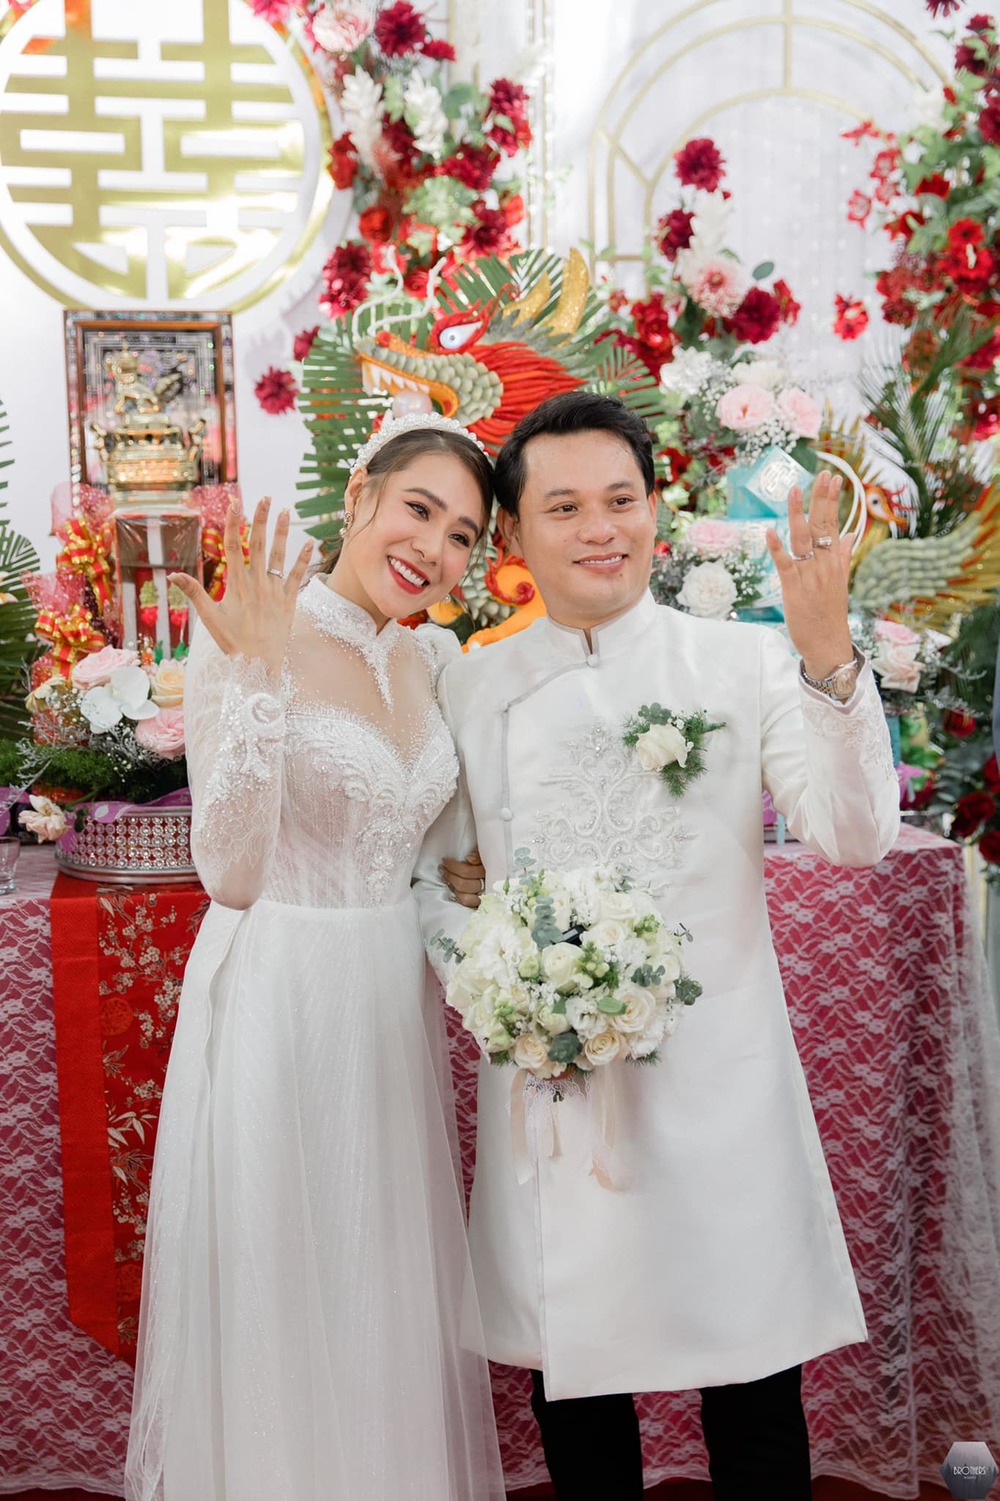  
Hai người sẽ có buổi tiệc cưới tại thành phố Hồ Chí Minh khi đại dịch đã được kiểm soát. (Ảnh FBNV) - Tin sao Viet - Tin tuc sao Viet - Scandal sao Viet - Tin tuc cua Sao - Tin cua Sao